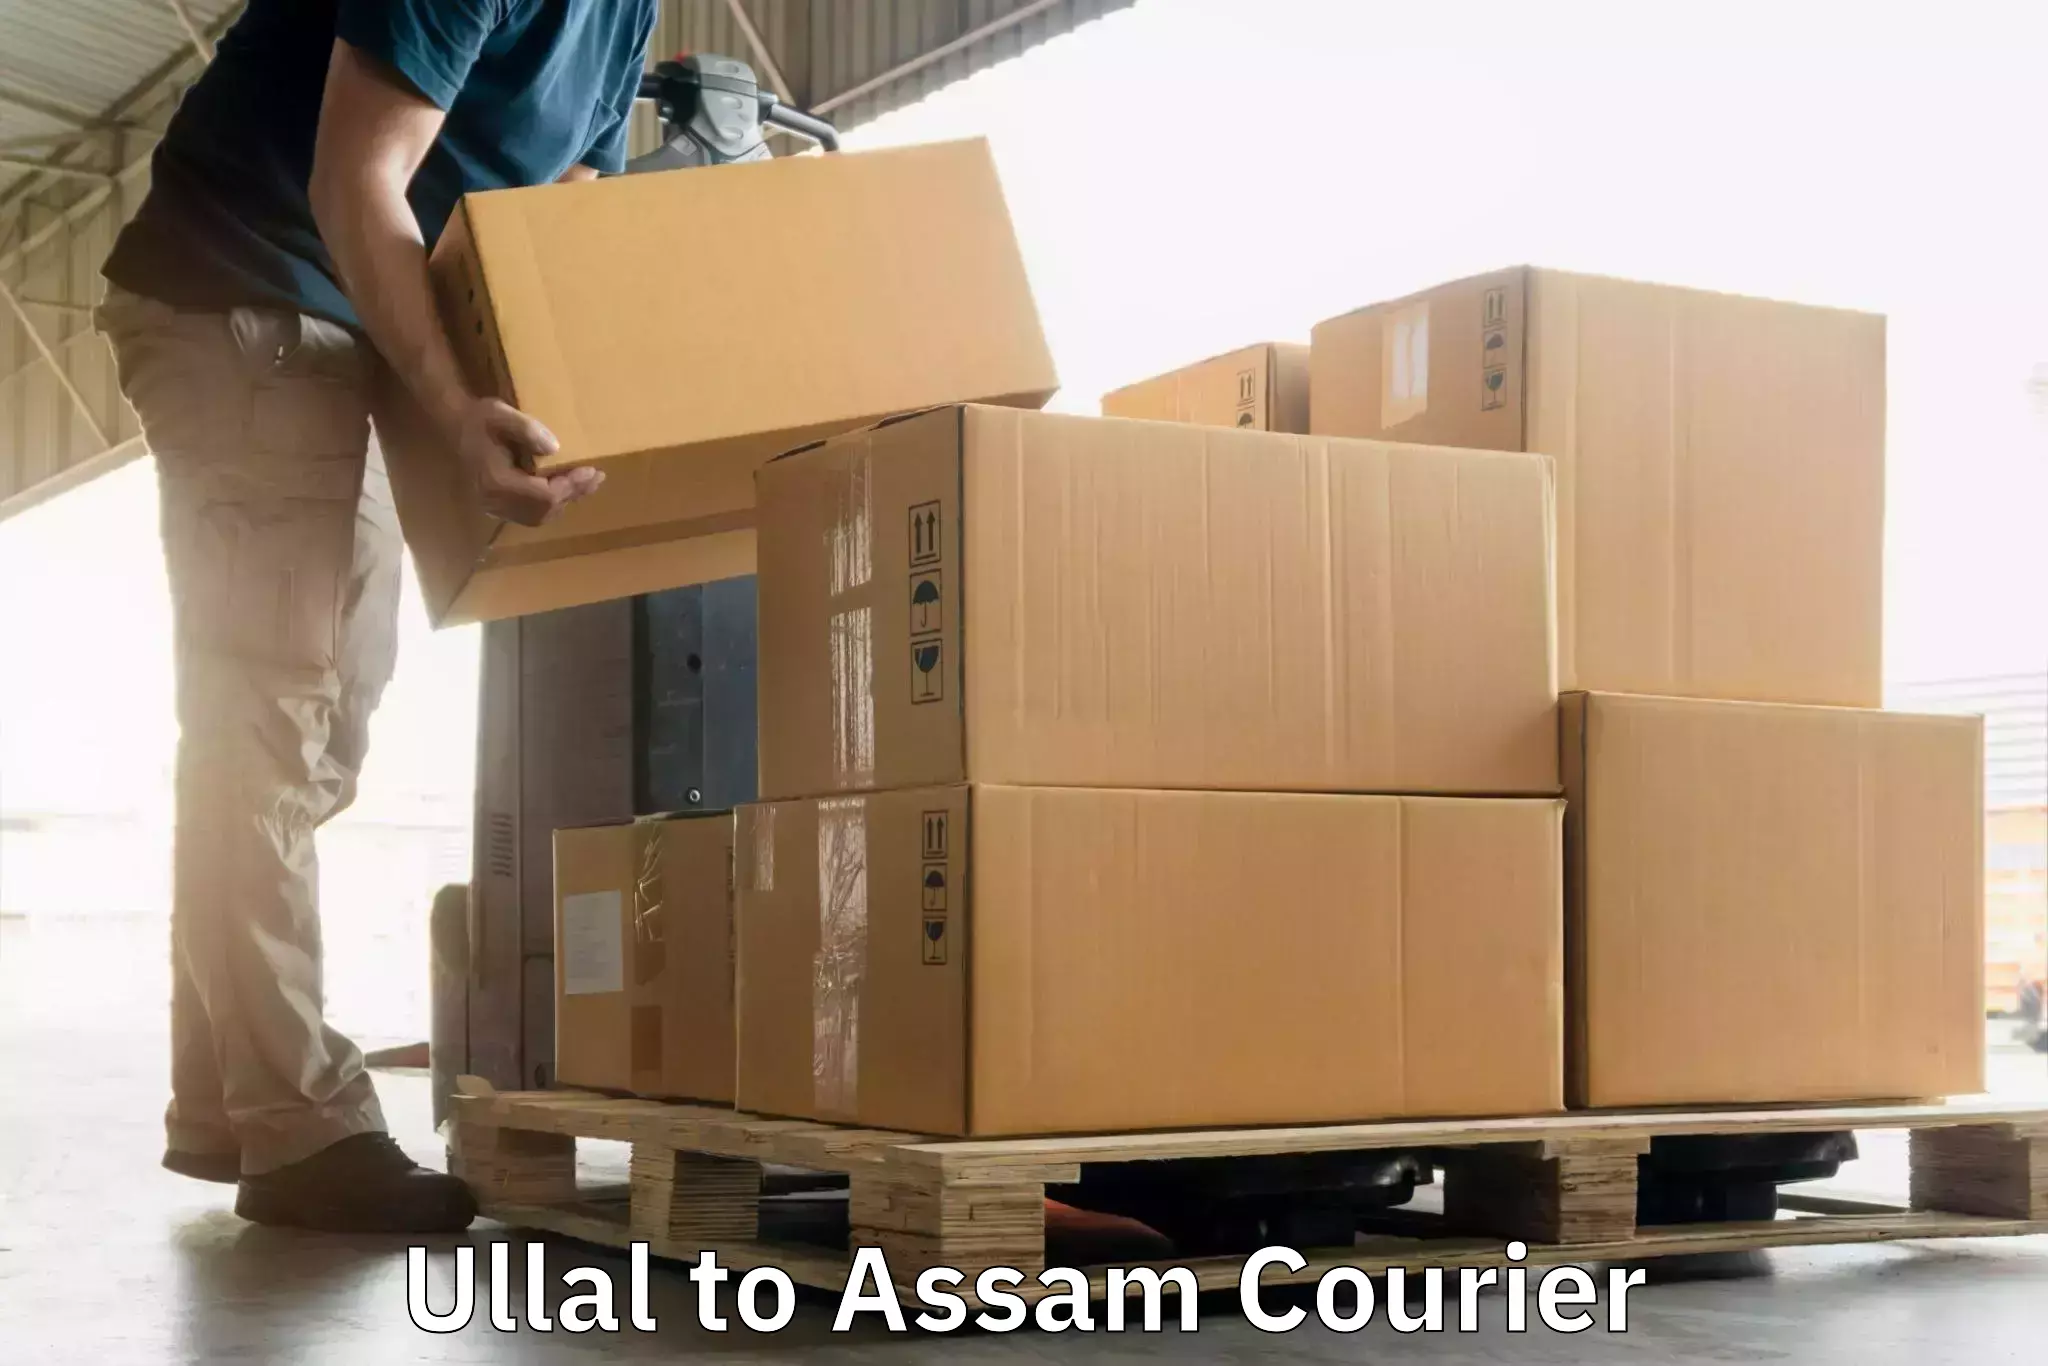 Global logistics network Ullal to Udalguri